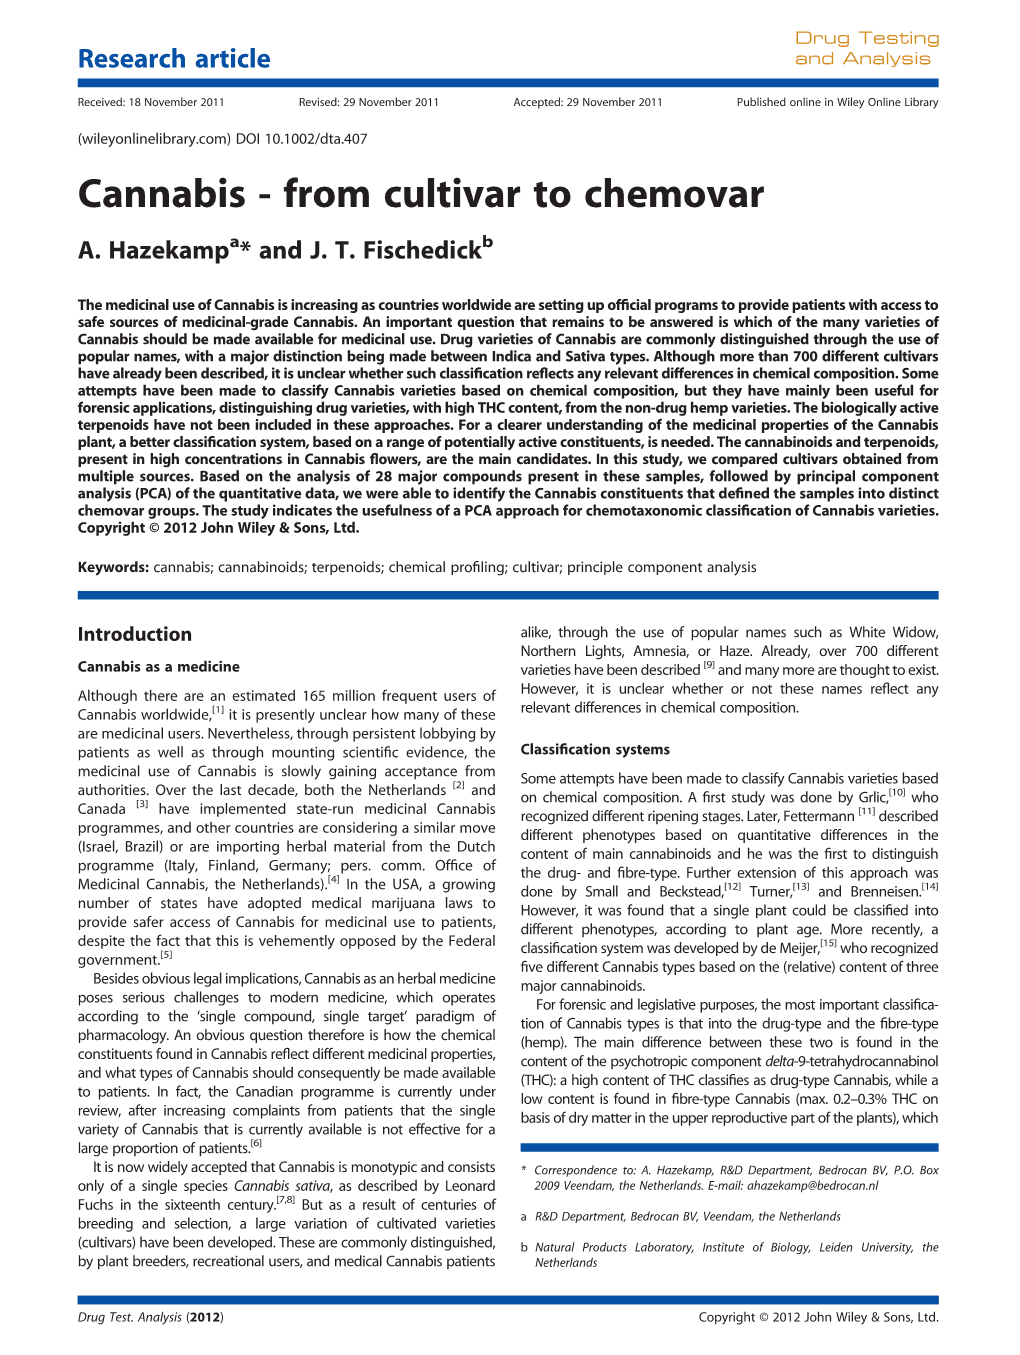 Cannabis from Cultivar to Chemovar